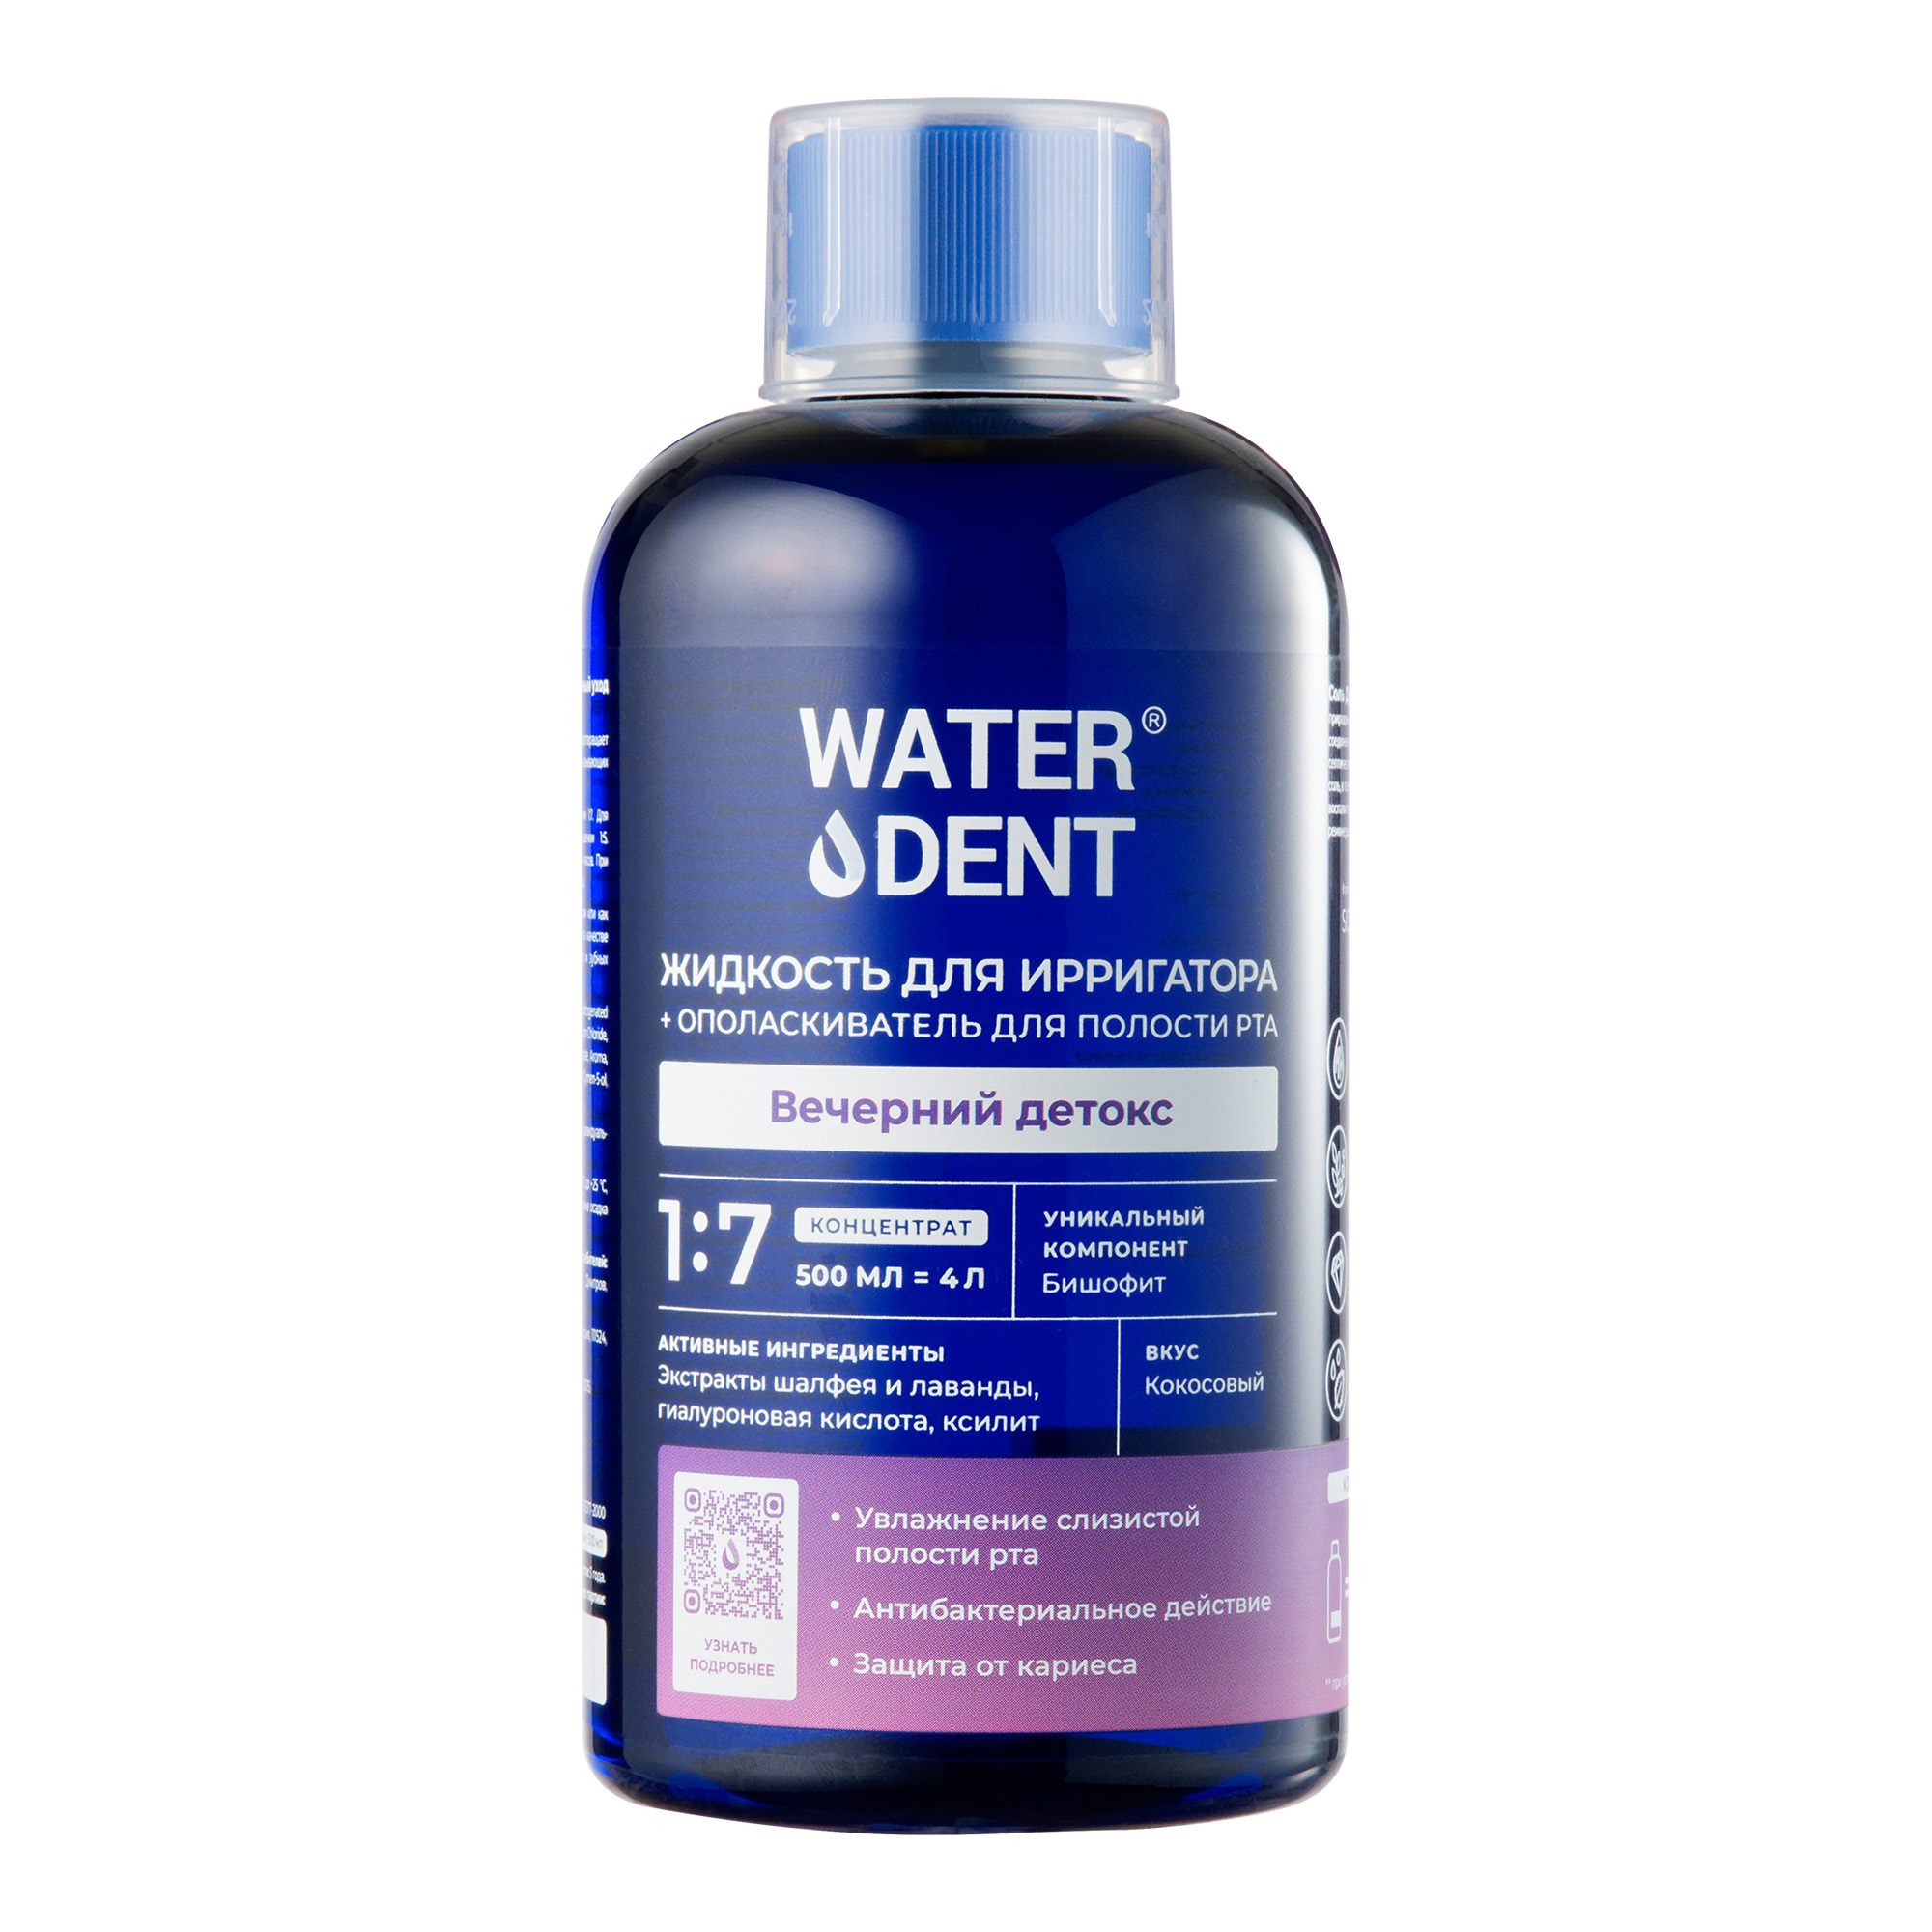 Waterdent, жидкость для ирригатора Вечерний детокс Кокос, флакон 500 мл жидкость для ирригатора waterdent вечерний детокс 100 мл